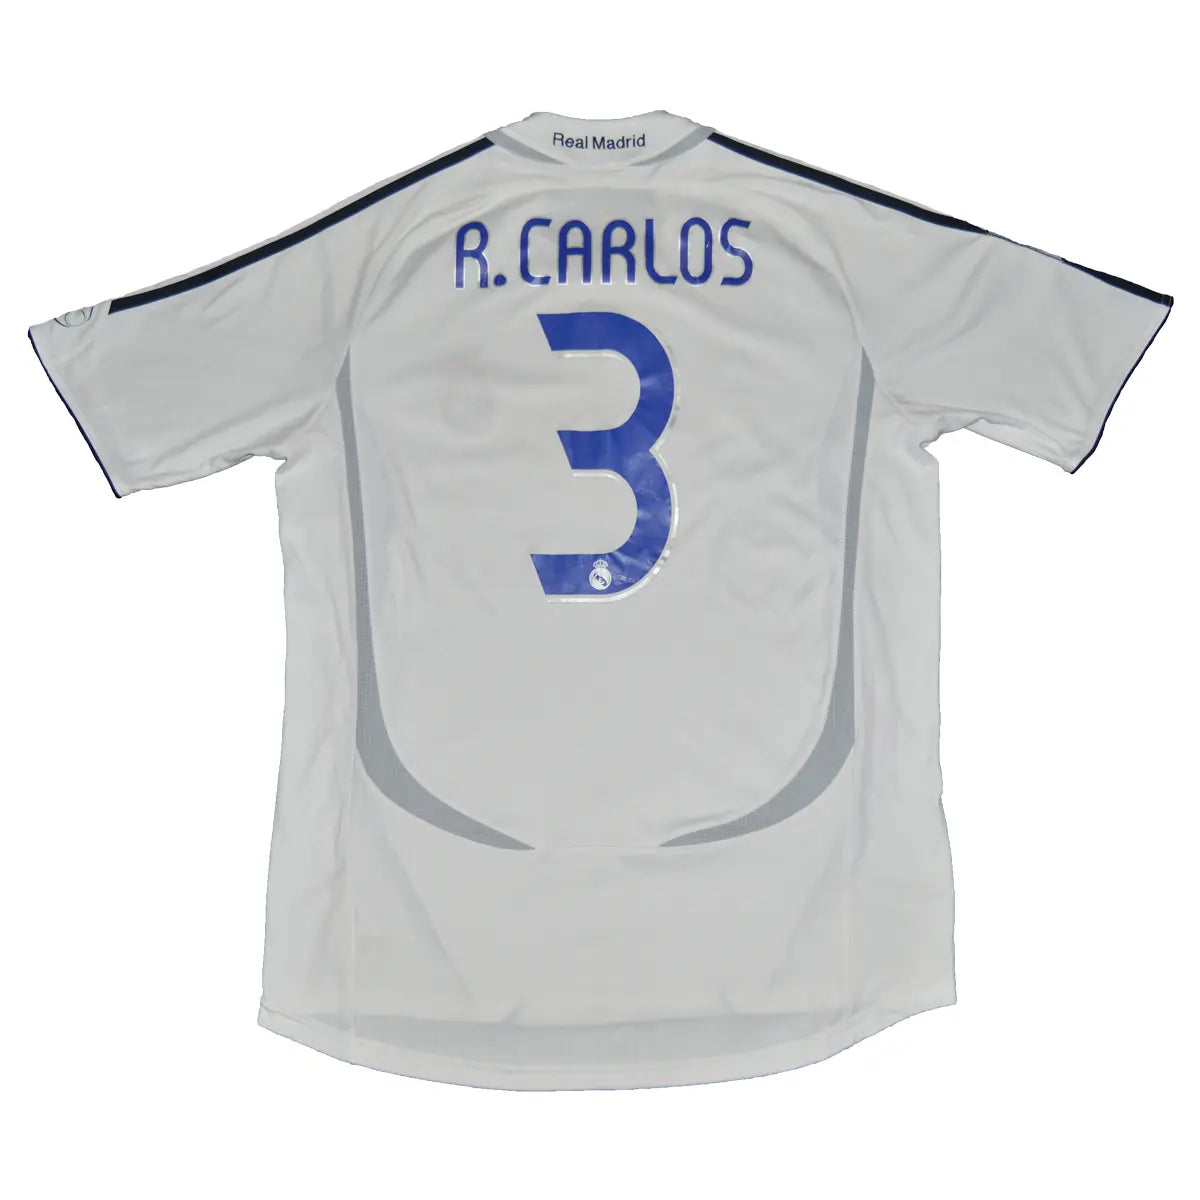 Maillot de foot rétro/vintage authentique blanc adidas Real Madrid domicile 2006-2007 Roberto Carlos flocage